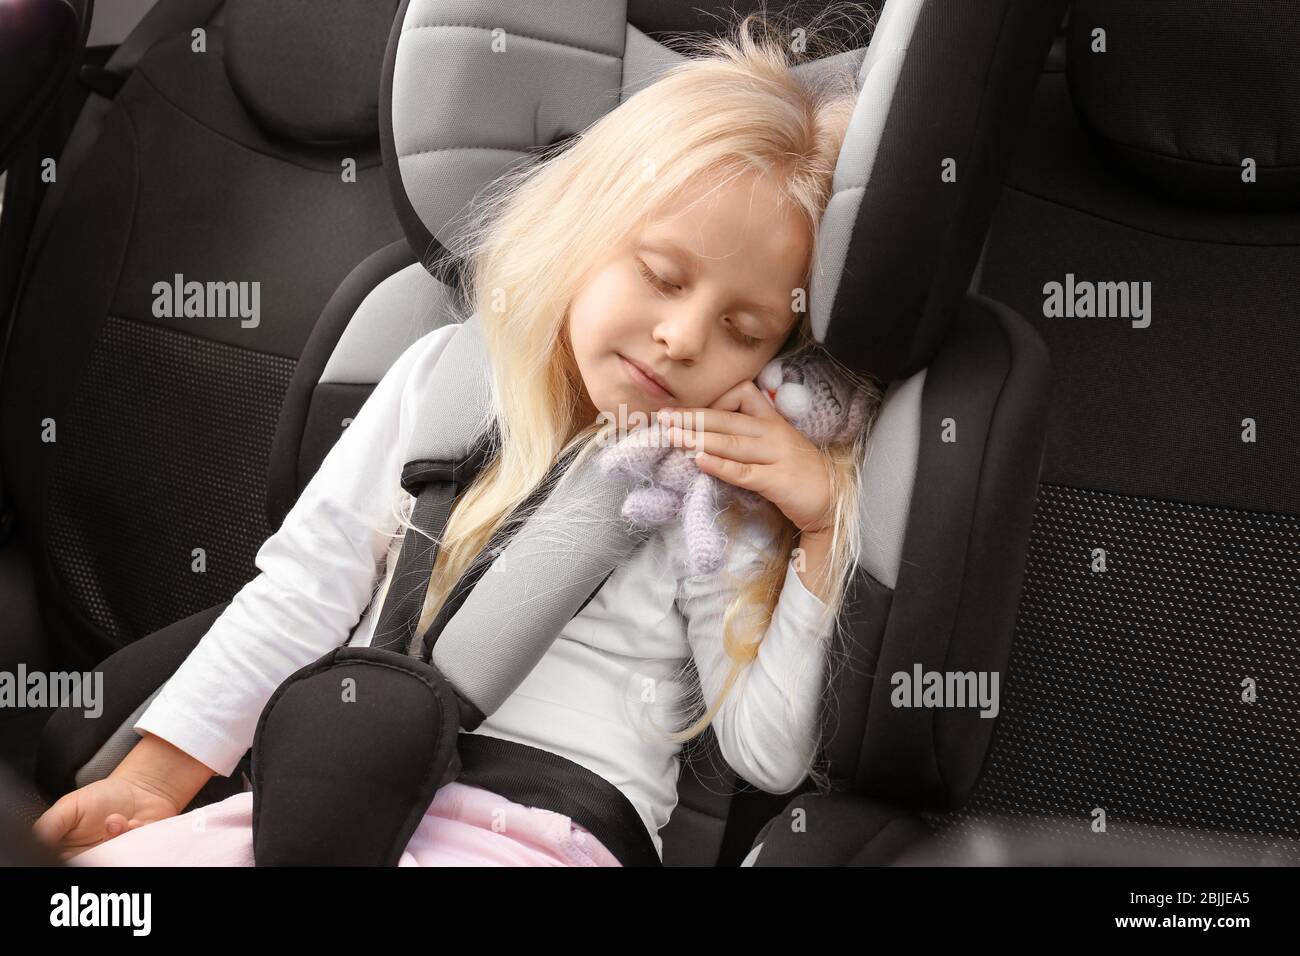 Blonde Mädchen schlafen in Kindersitz mit kleinen Spielzeug Stockfotografie  - Alamy